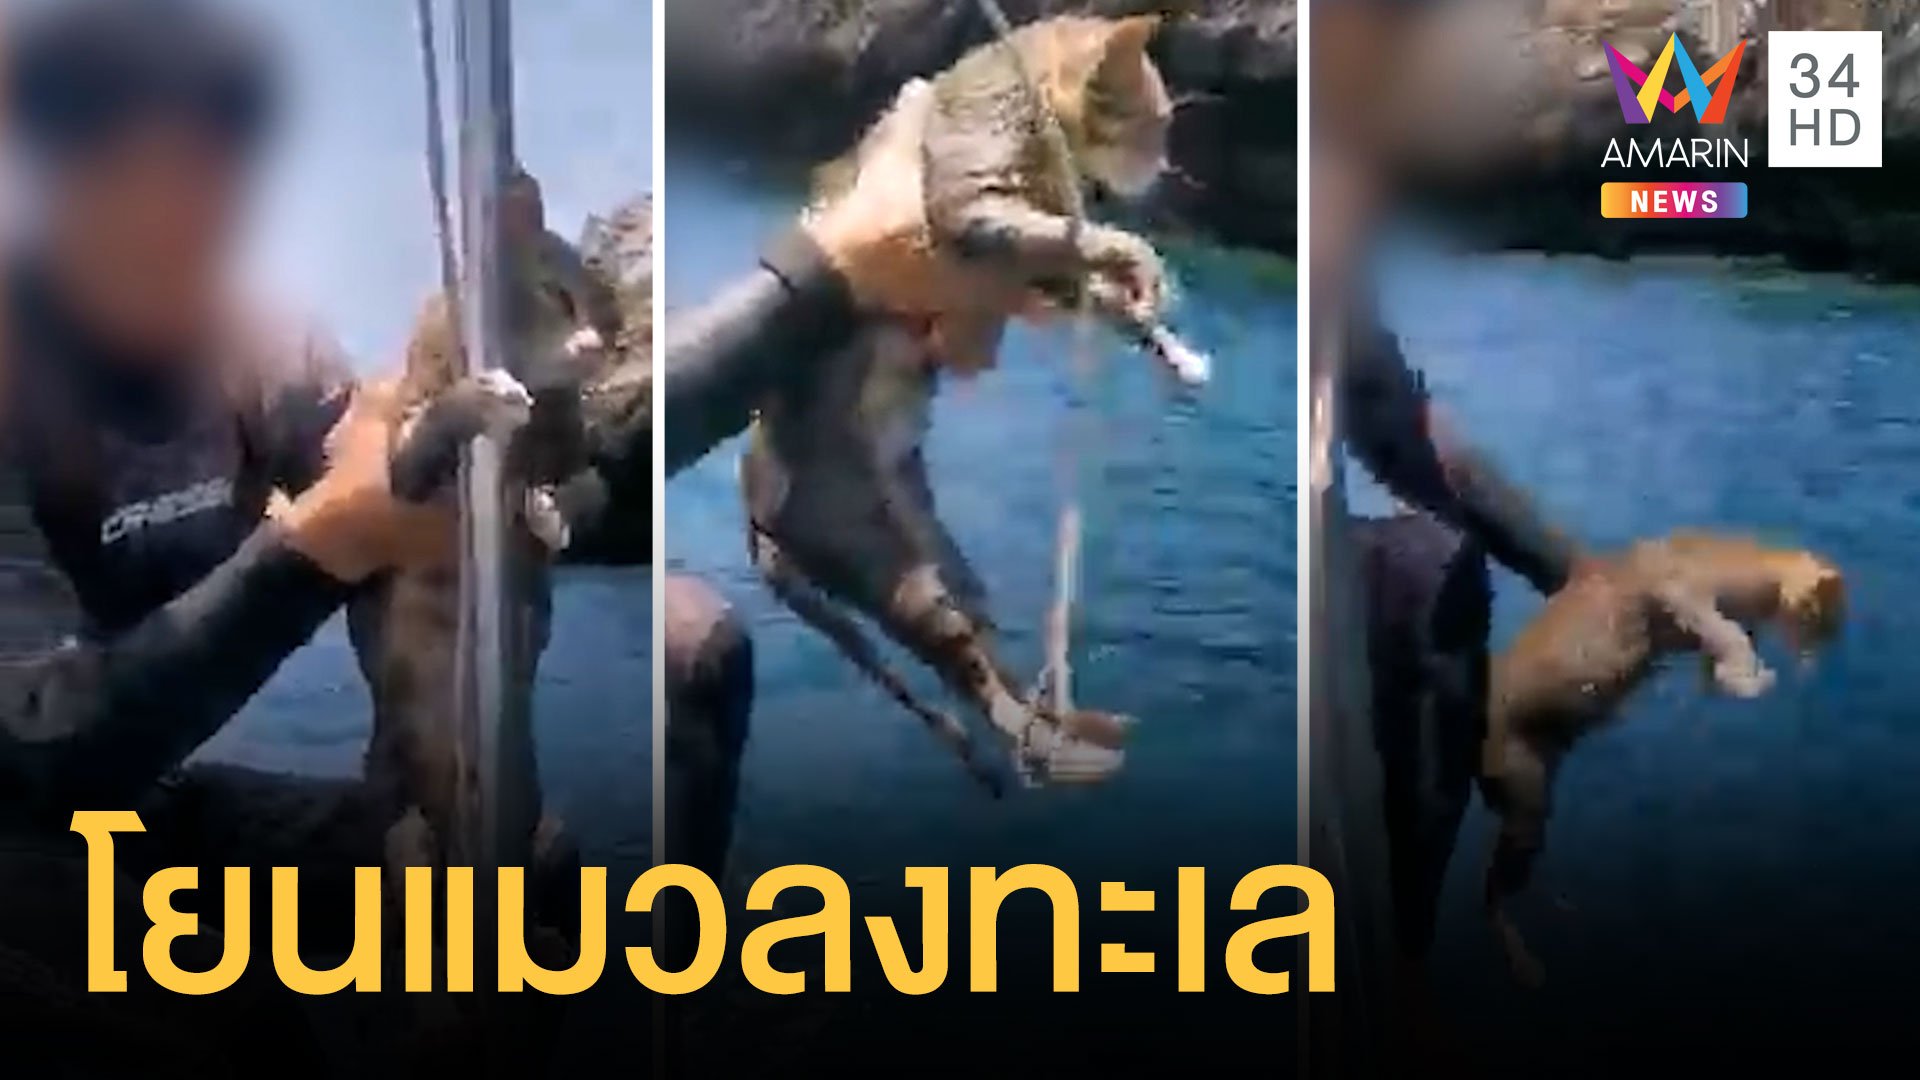 หนุ่มแกล้งแมวจับโยนทะเล ชาวเน็ตถล่มเละ | ข่าวอรุณอมรินทร์ | 29 เม.ย. 64 | AMARIN TVHD34